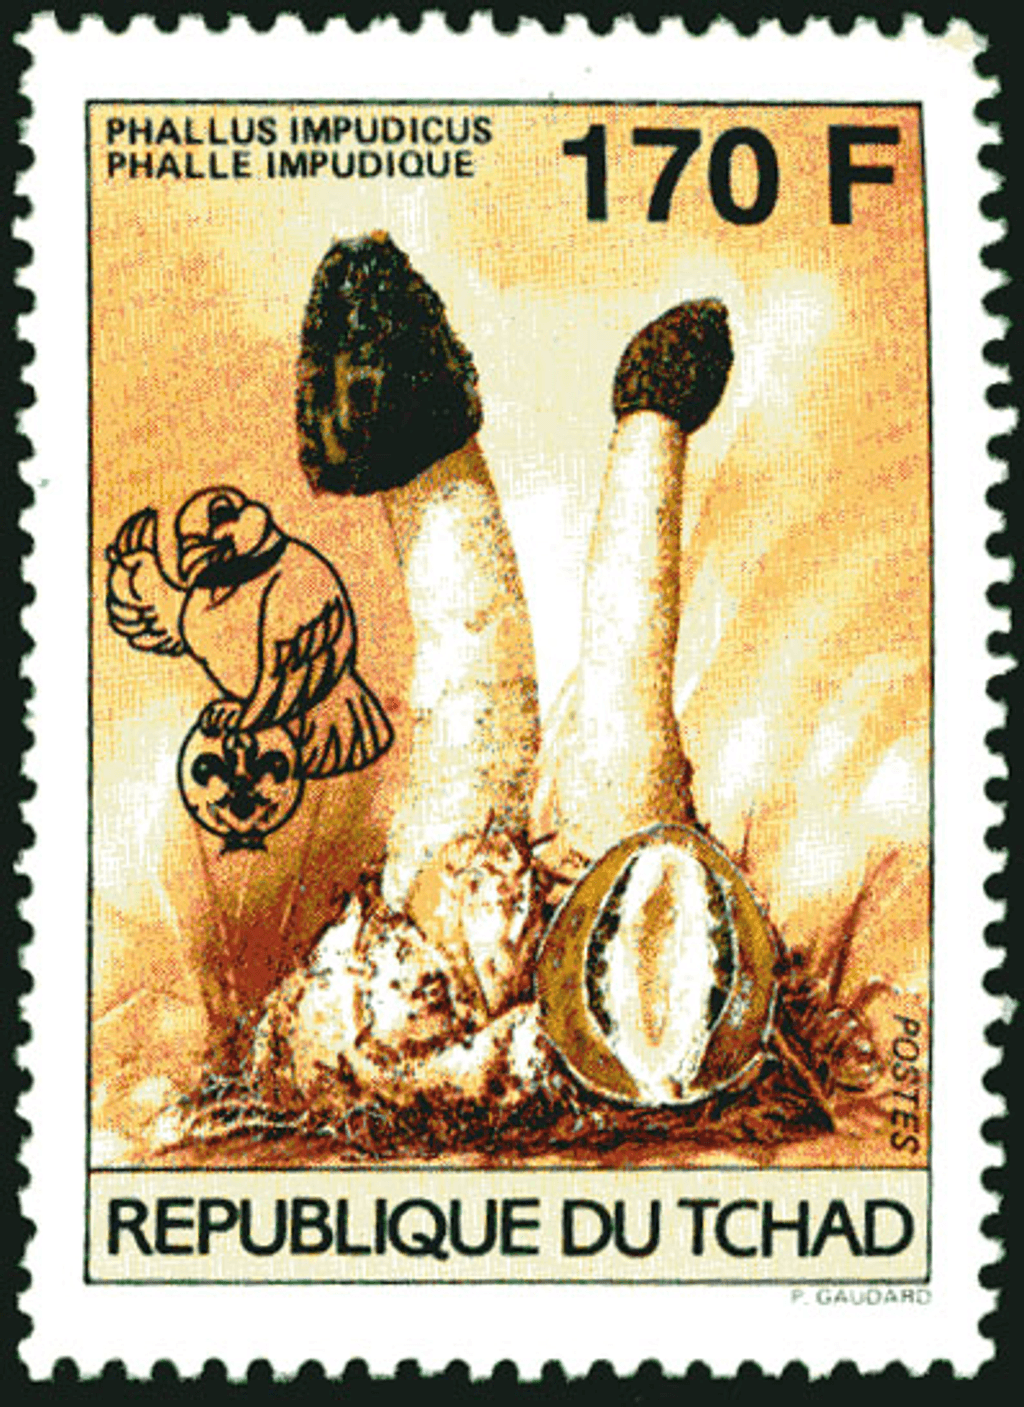 18 th Jamborée Netherland /Mushrooms